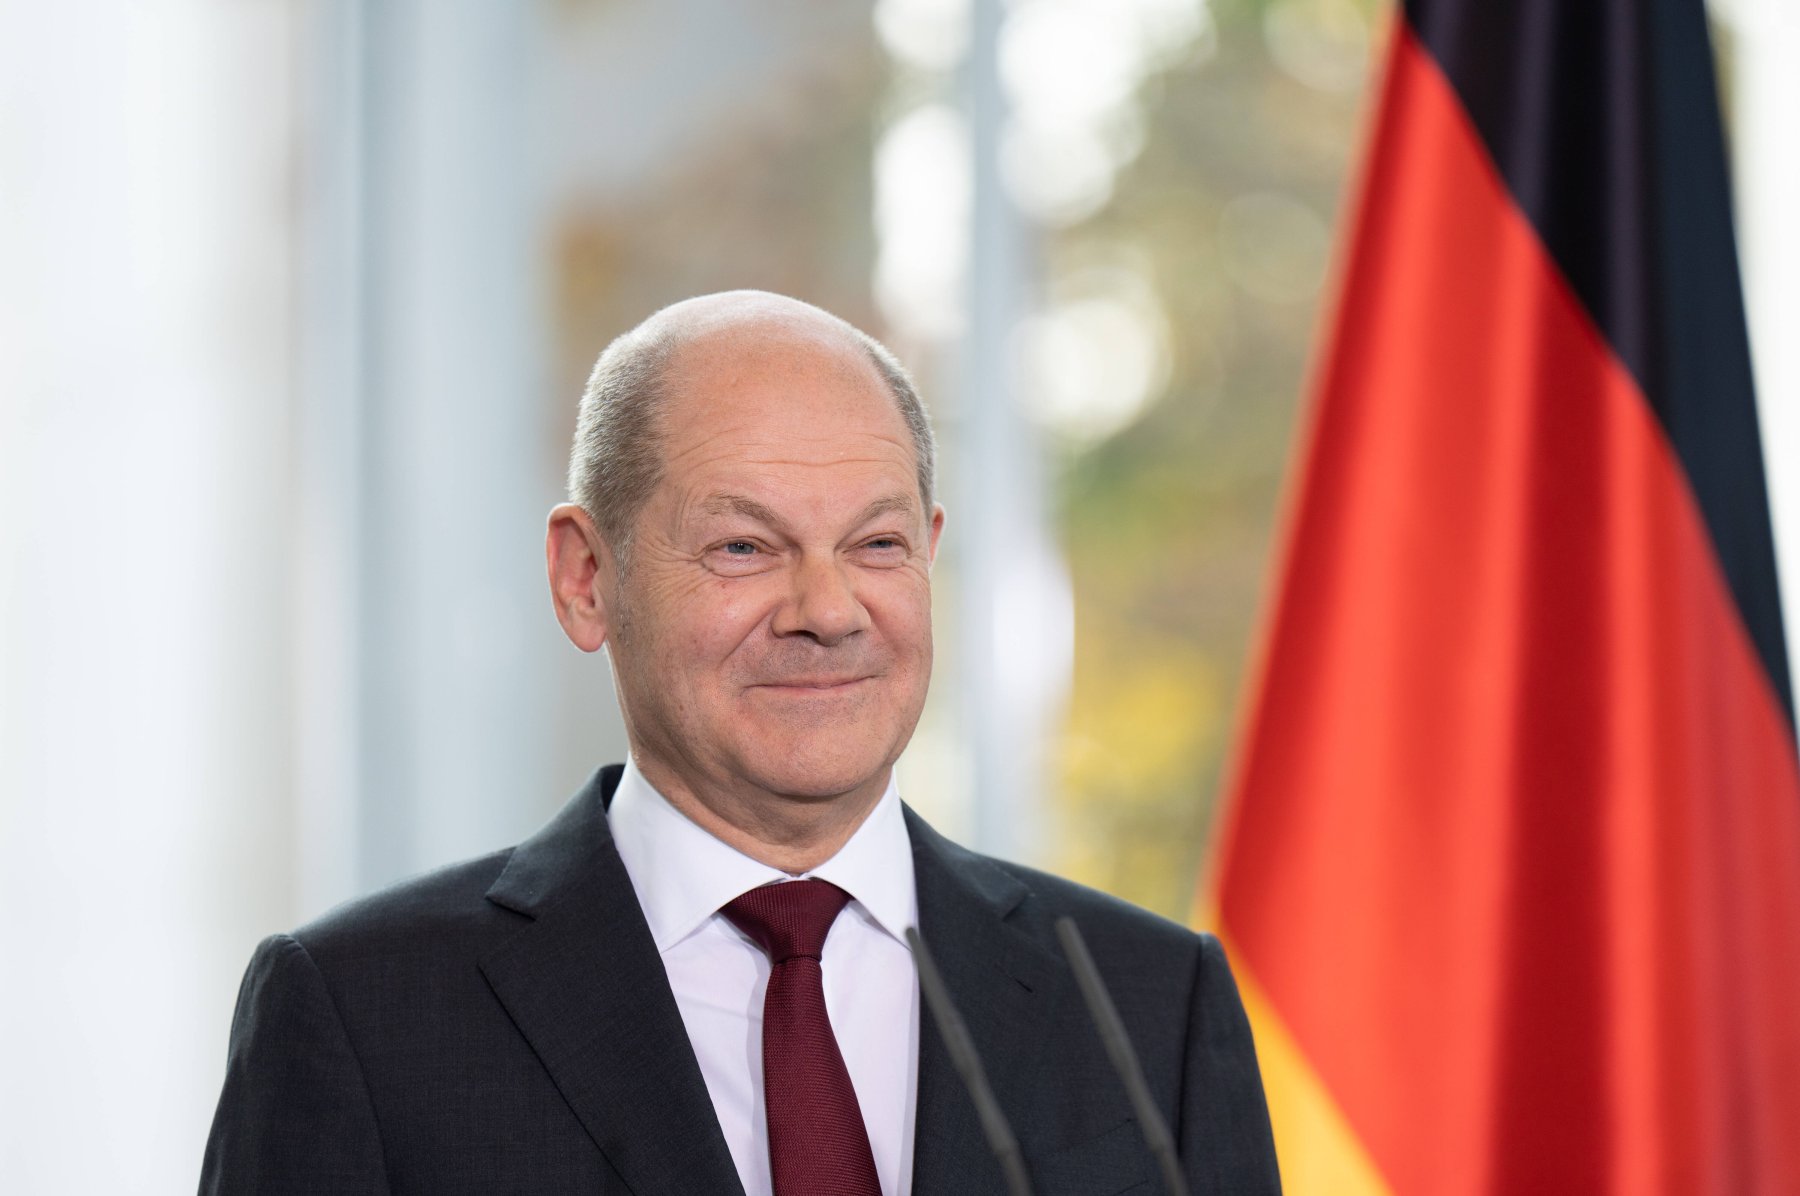 Hilfen mit „Doppel-Wumms“: 200 Milliarden Euro stellt die Bundesregierung unter Führung von Bundeskanzler Olaf Scholz (SPD) zur Verfügung, um Bürger*innen und Betrieben in der akuten Energiepreiskrise zu unterstützen.